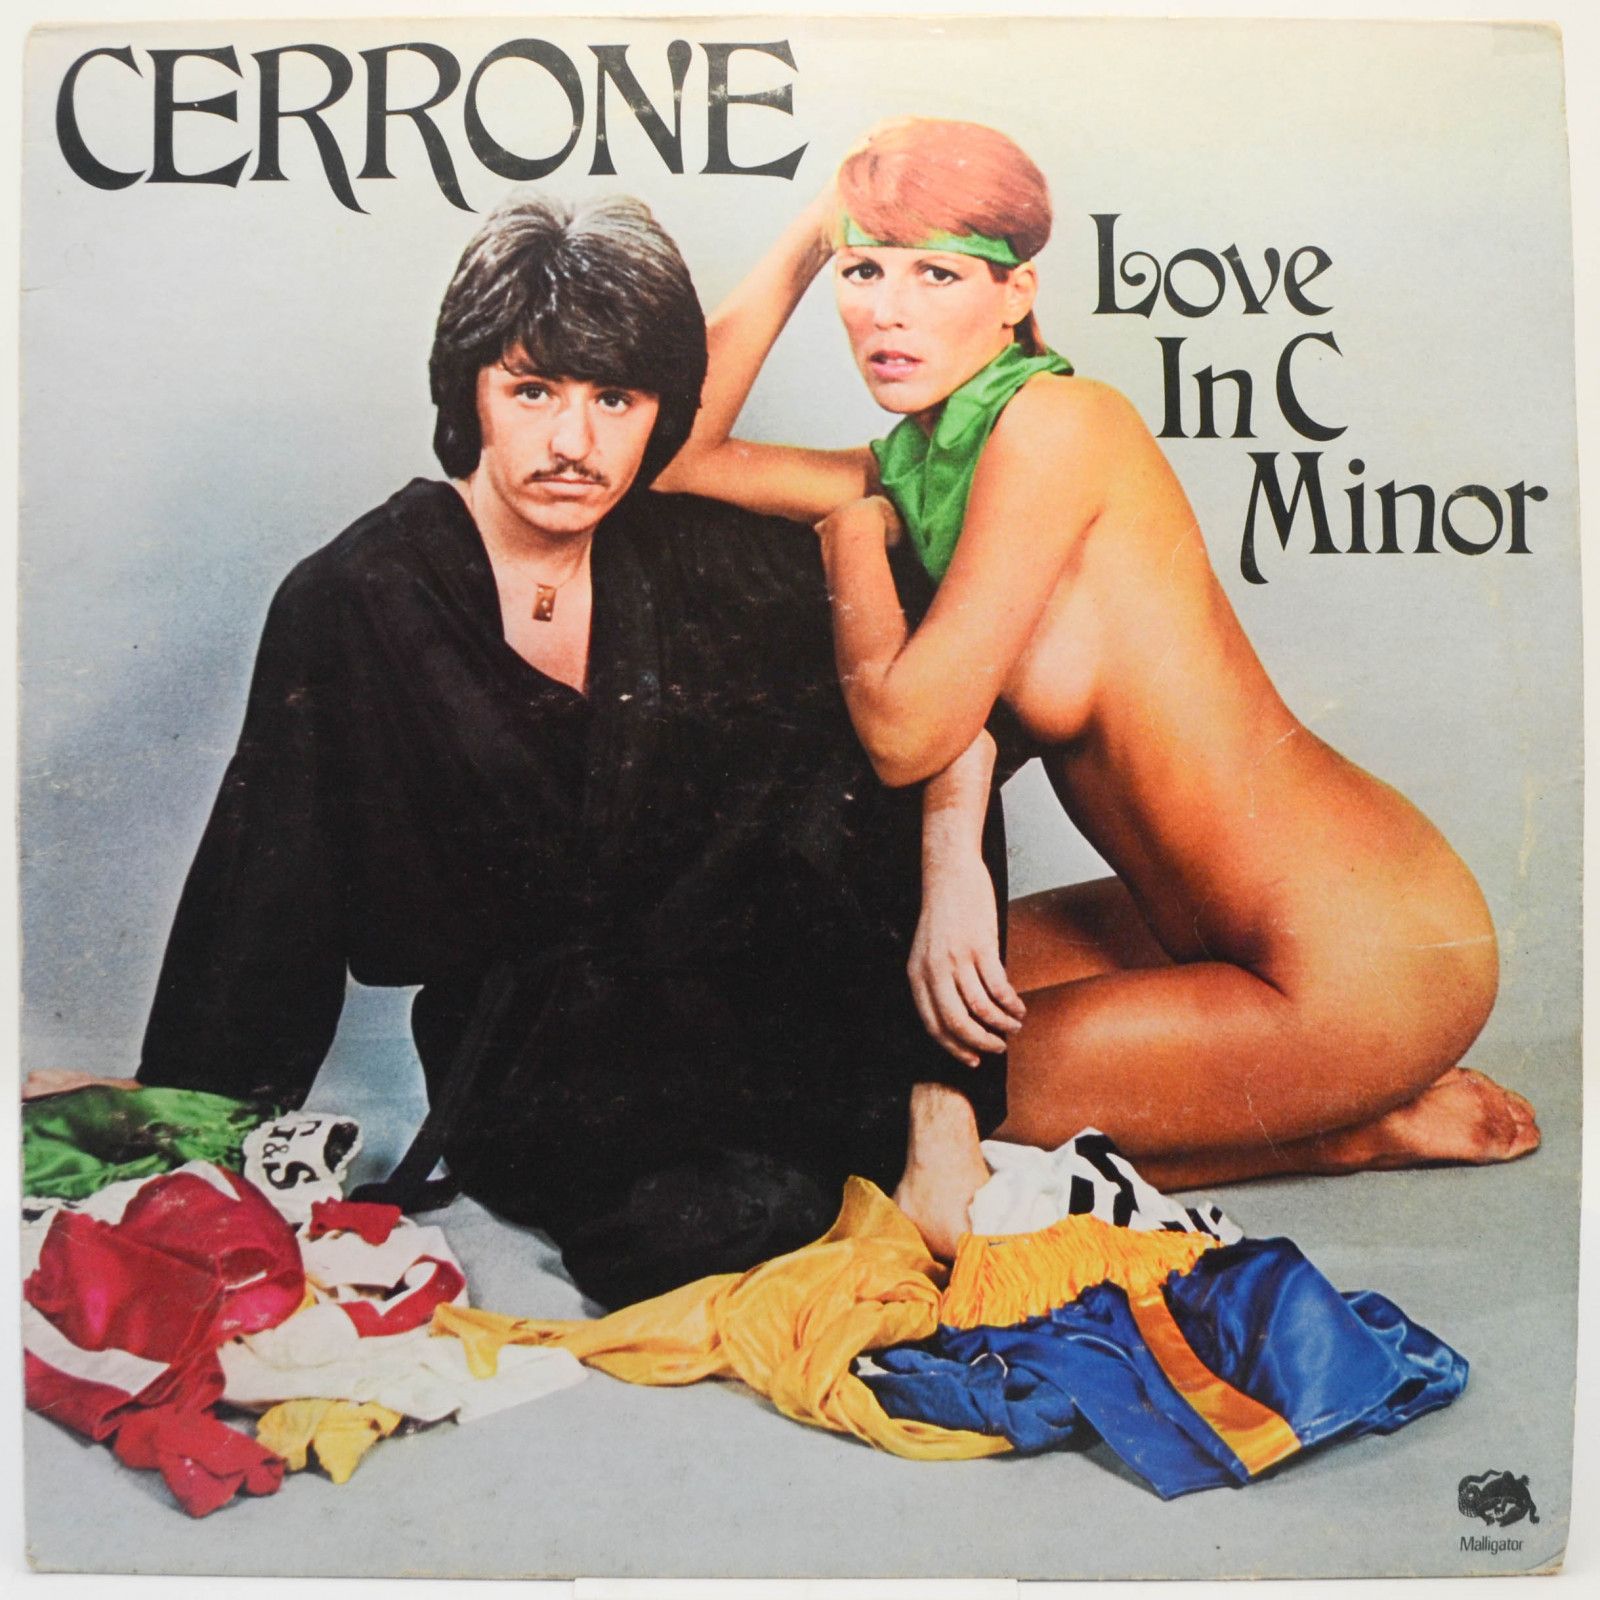 Cerrone — Love In C Minor (France), 1976